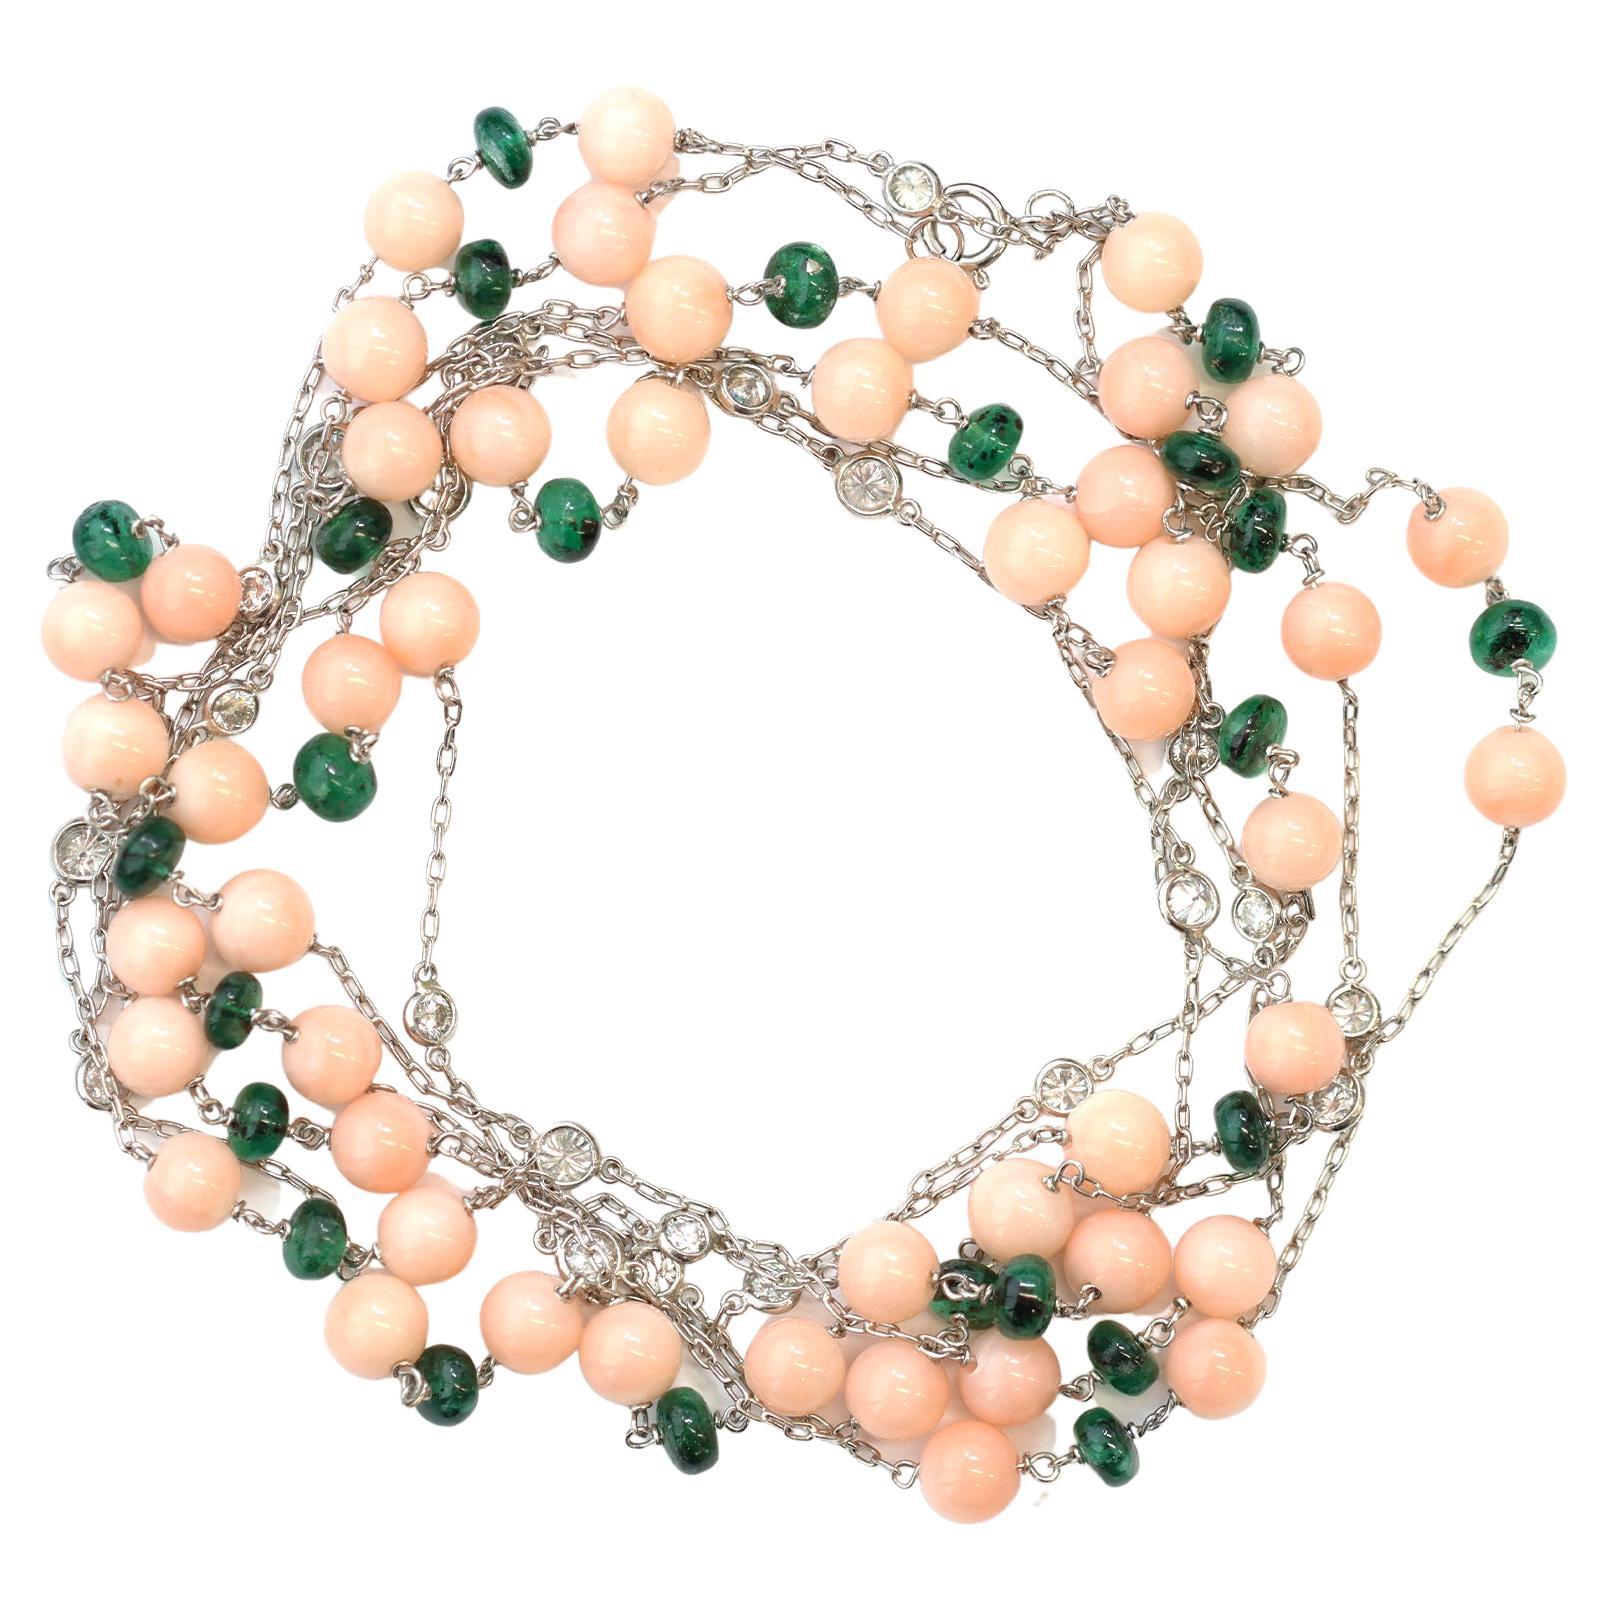 Le long collier créé par Rosaria Varra est composé d'une perle de corail en peau d'ange rose non traitée alternant avec une perle d'émeraude polie et des diamants ronds sertis en chaton. Le poids estimé des diamants est de 2.44 carats, de couleur GH